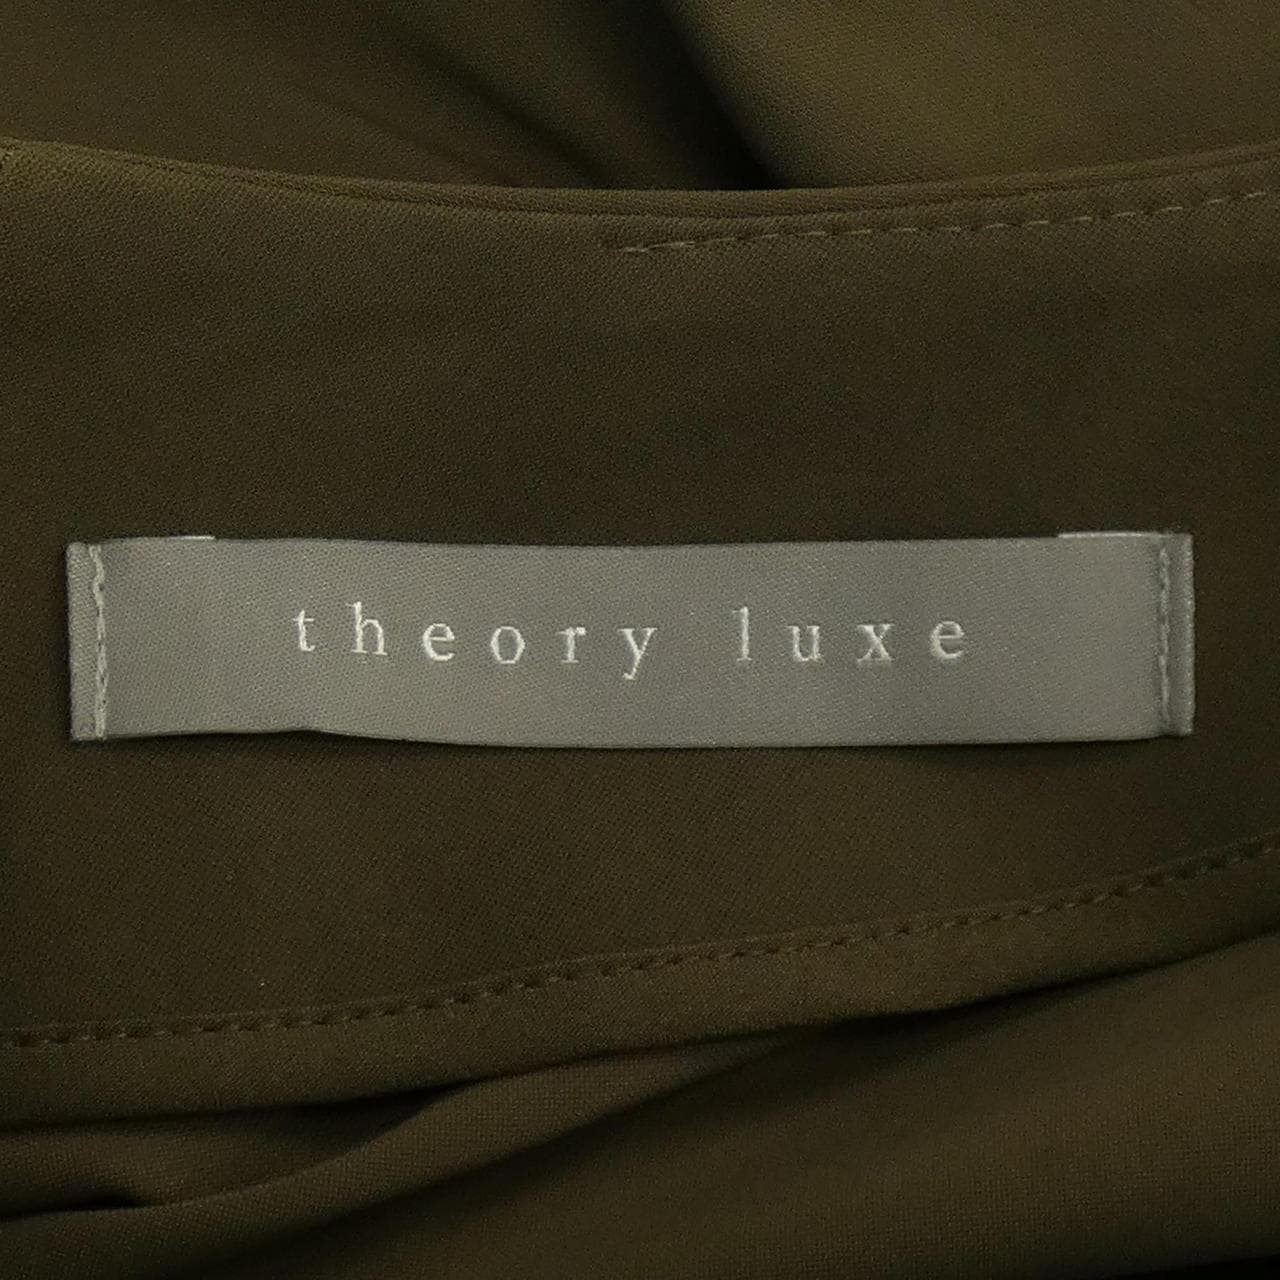 塞奧利露Theory luxe連衣裙